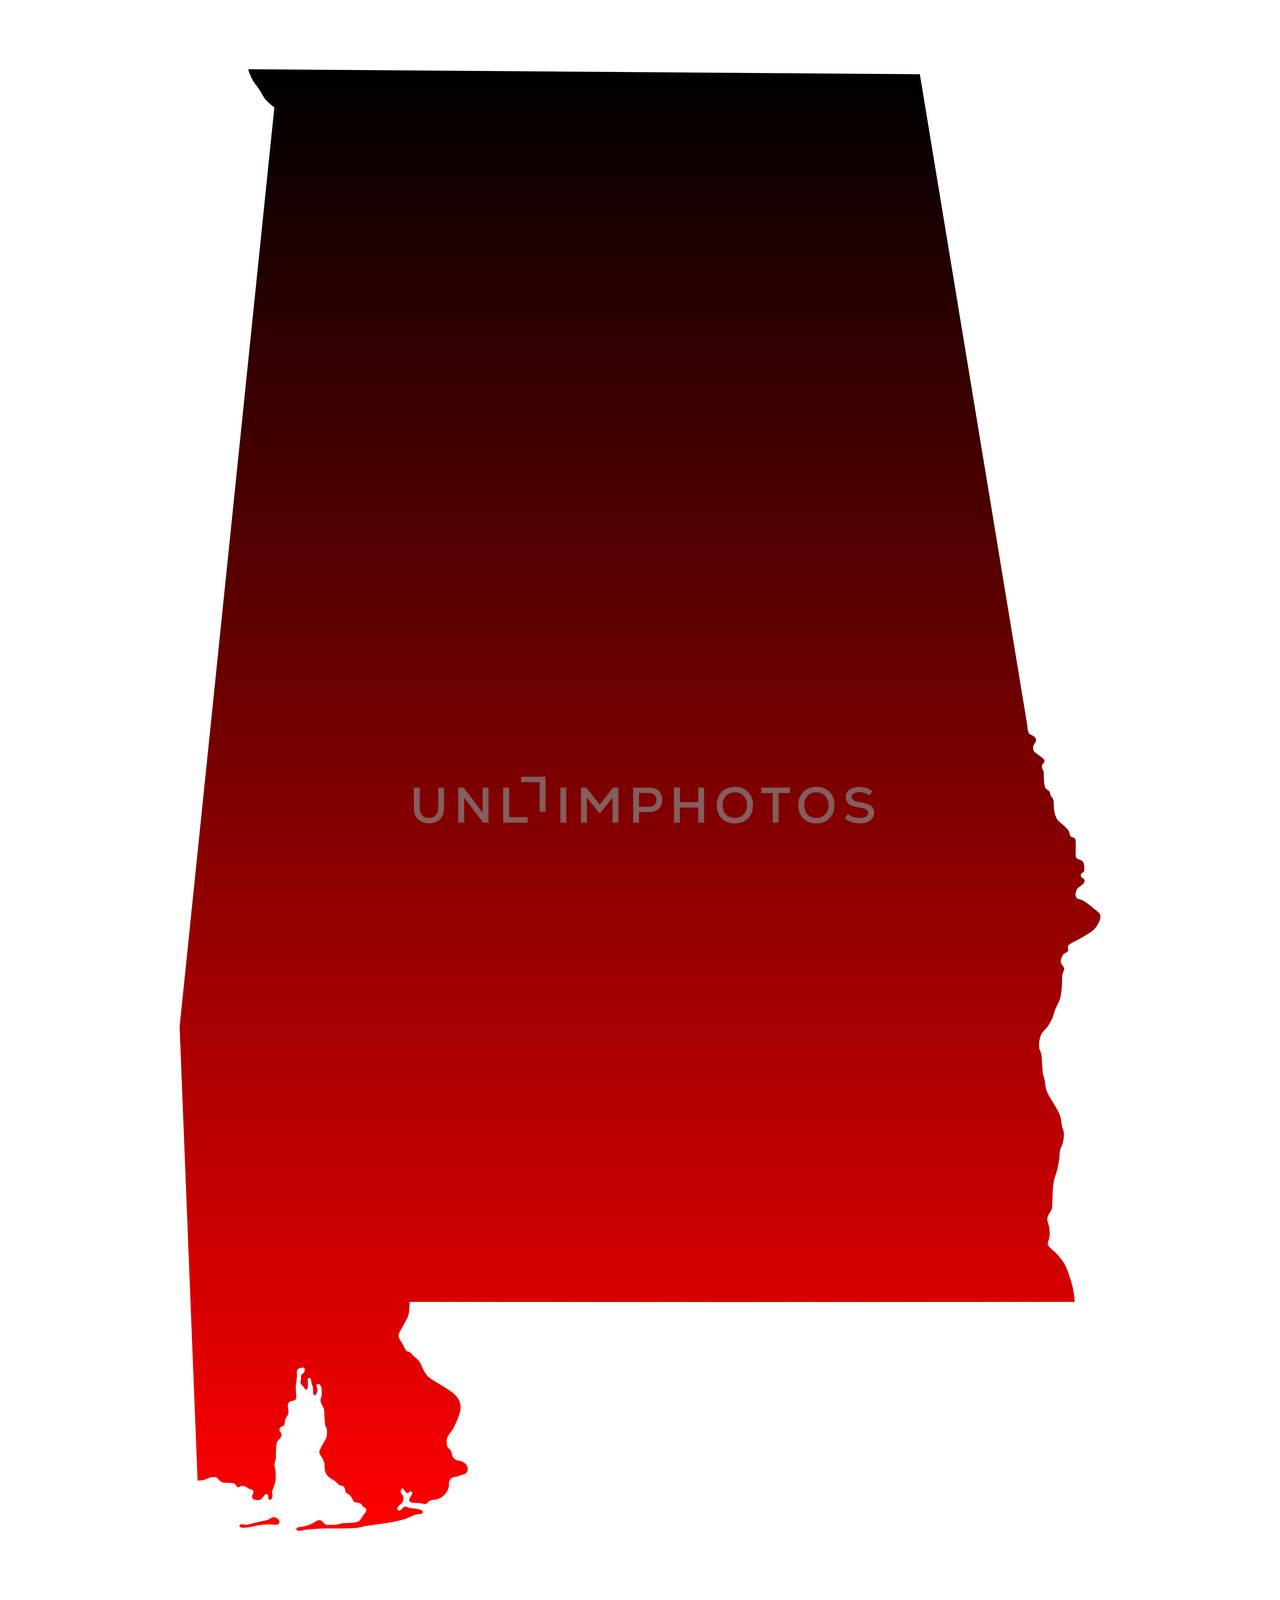 Map of Alabama by rbiedermann